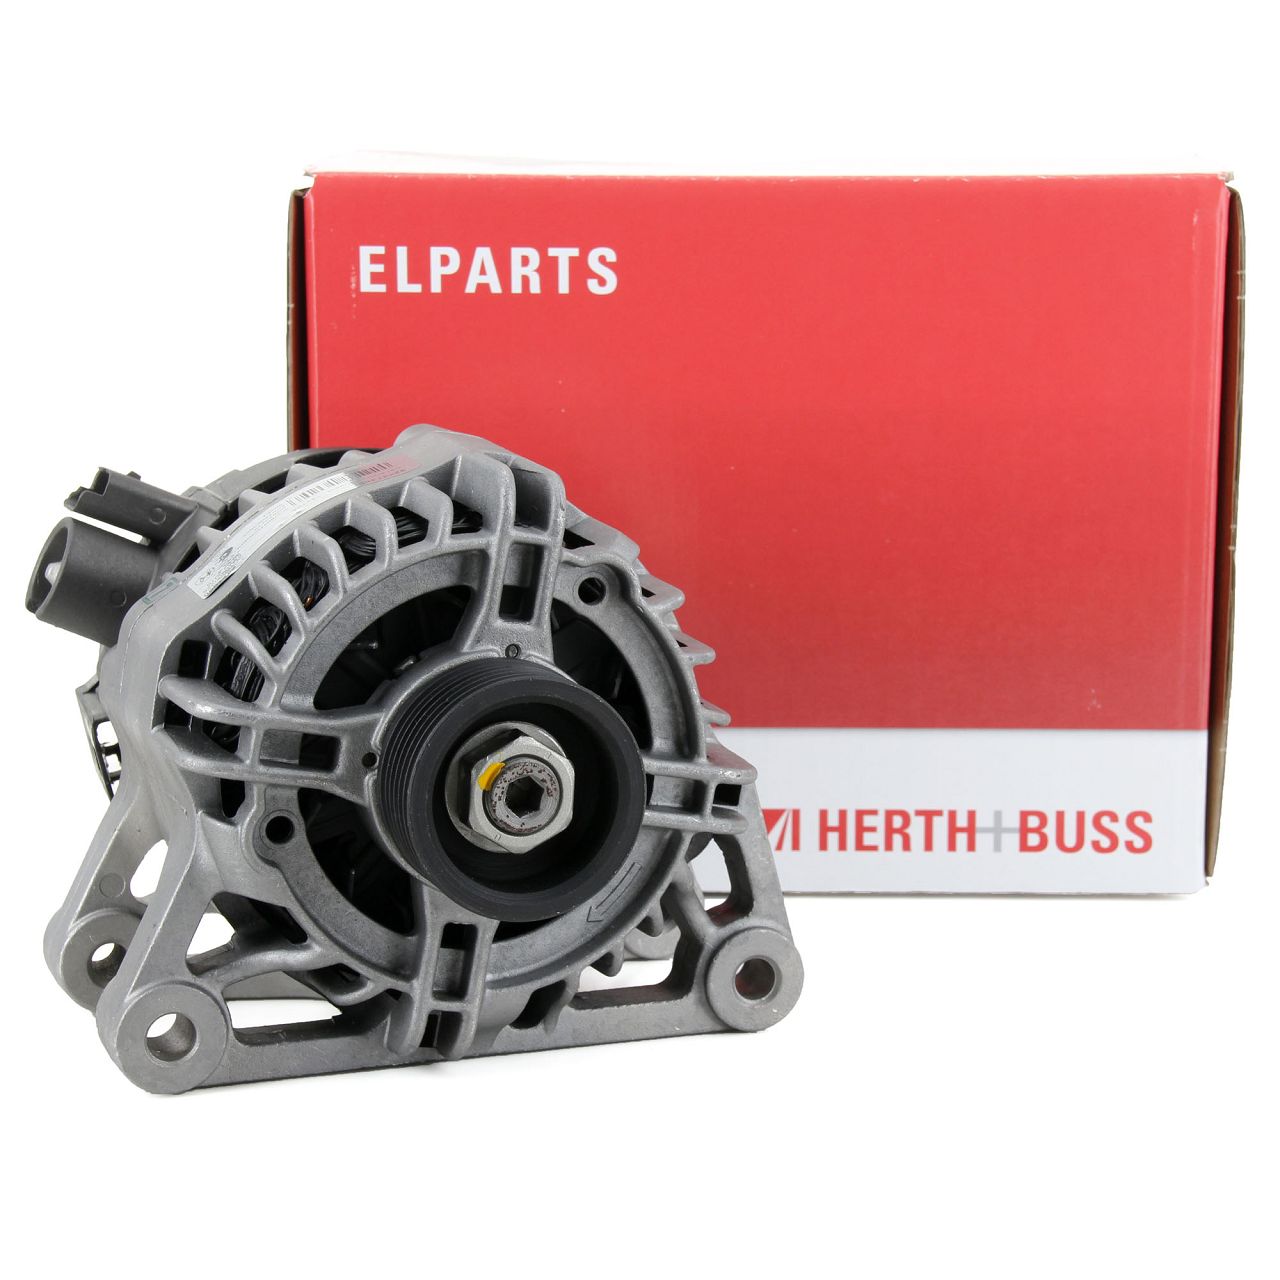 HERTH+BUSS ELPARTS Lichtmaschine Generator für Citroen Berlingo Peugeot 206